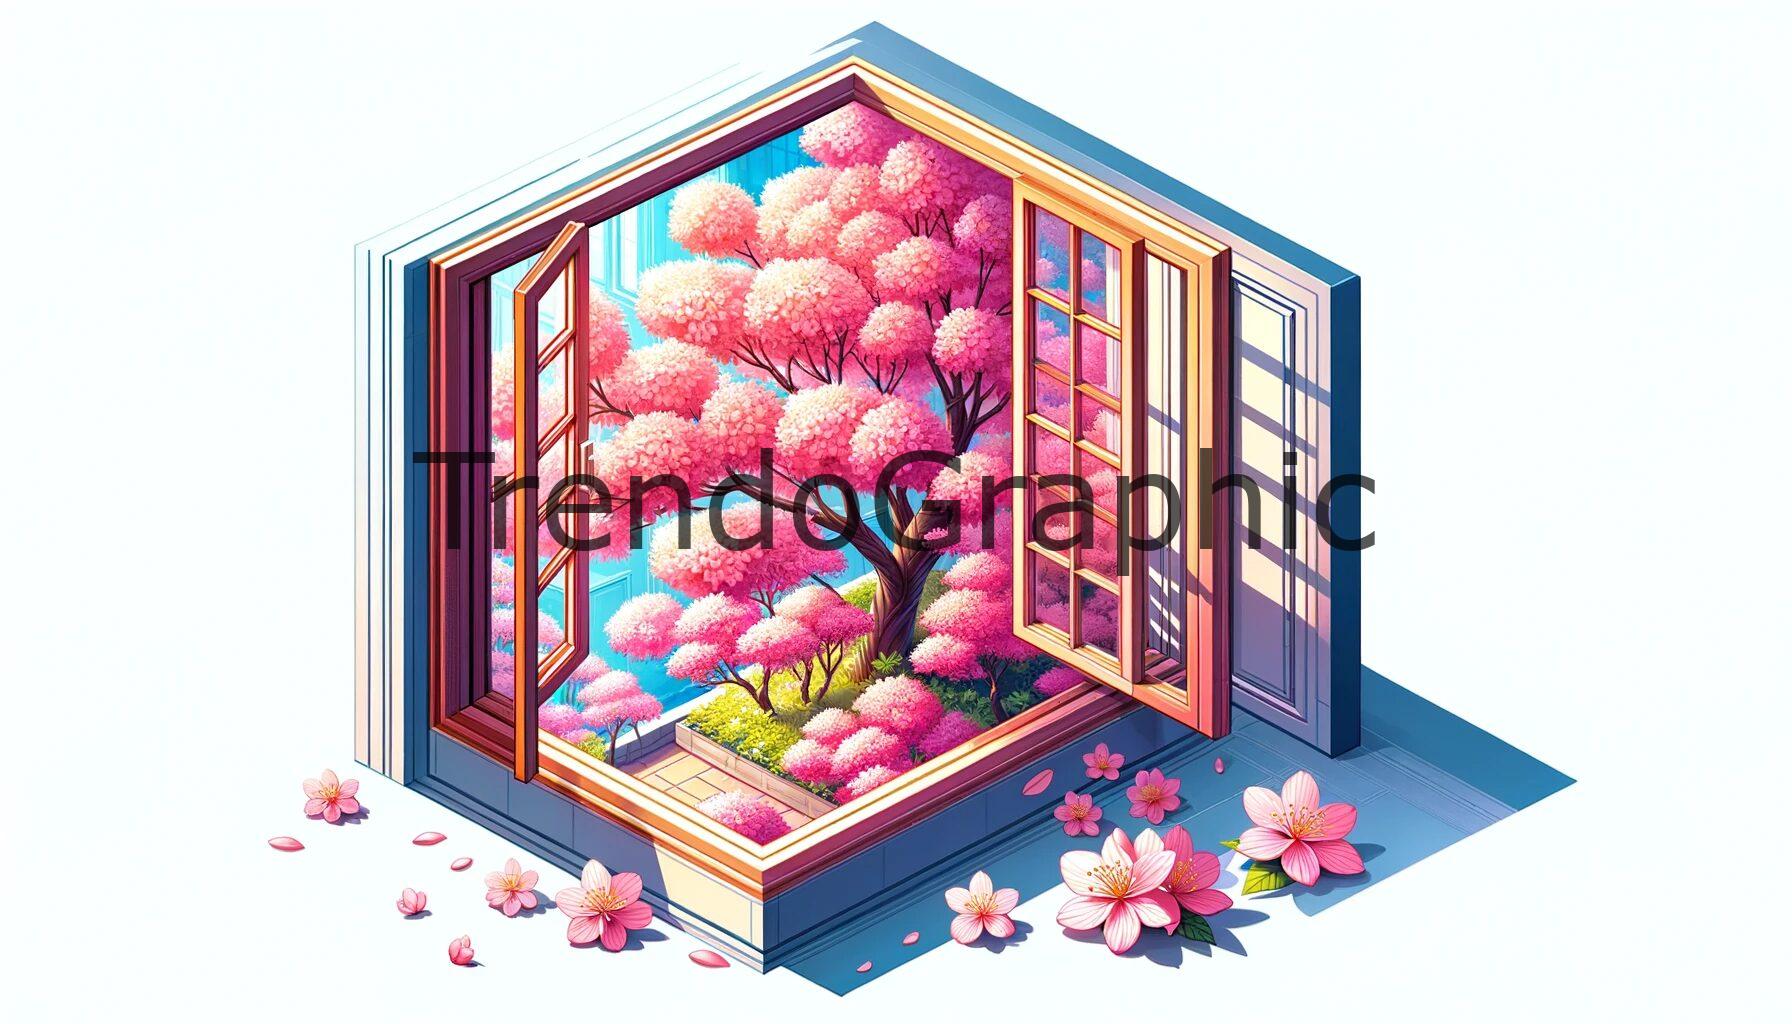 Spring Gaze: Cherry Blossoms through the Window